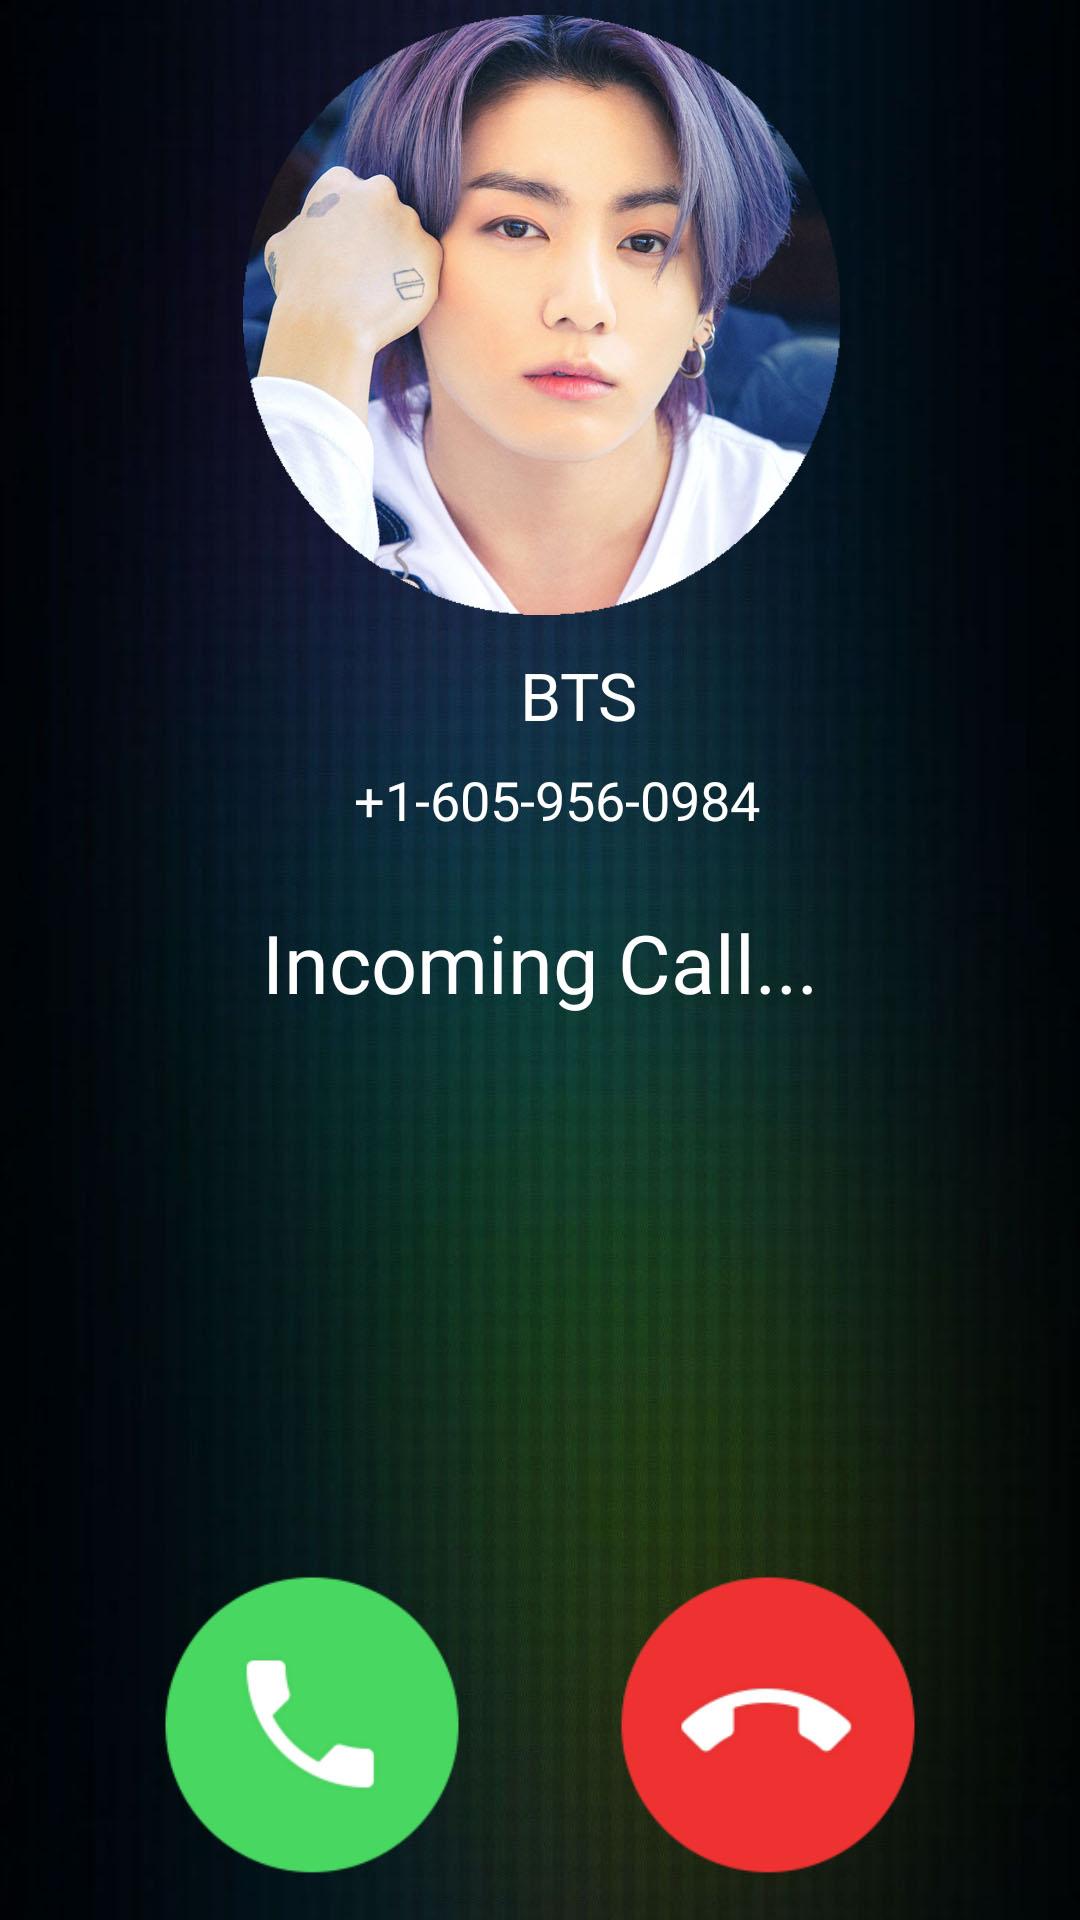 Descarga de APK de Fake Call from BTS Prank para Android